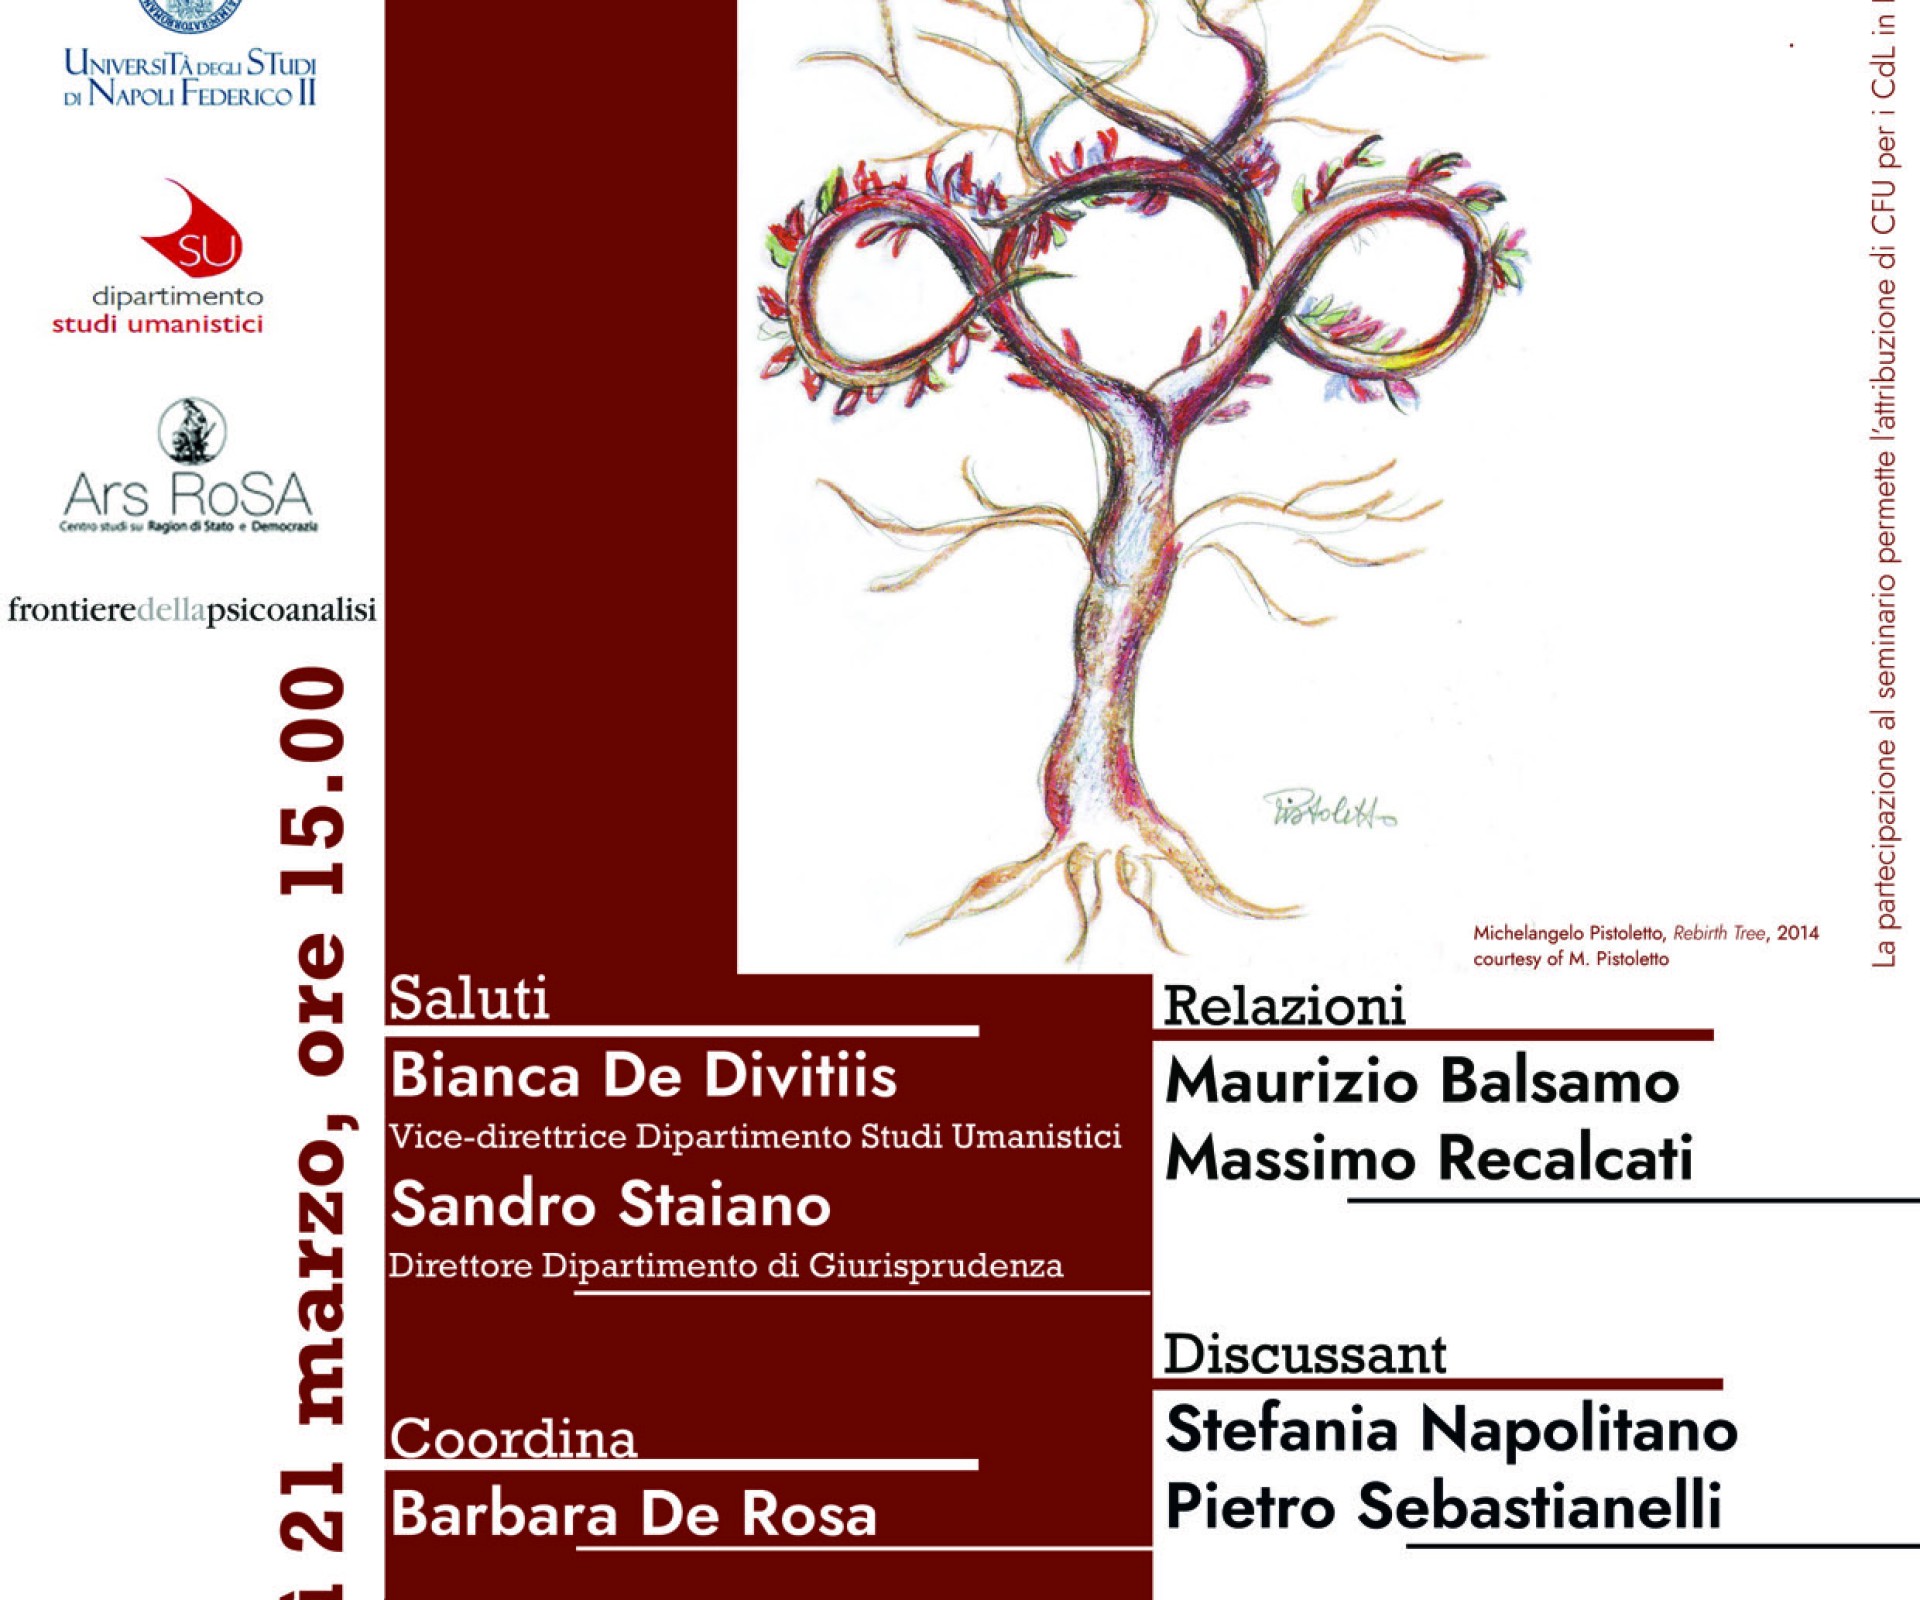 “Psicoanalisi e storia. Un dialogo a più voci" Maurizio Balsamo (CPdR) e Massimo Recalcati a Napoli il 21 marzo ore 15:00